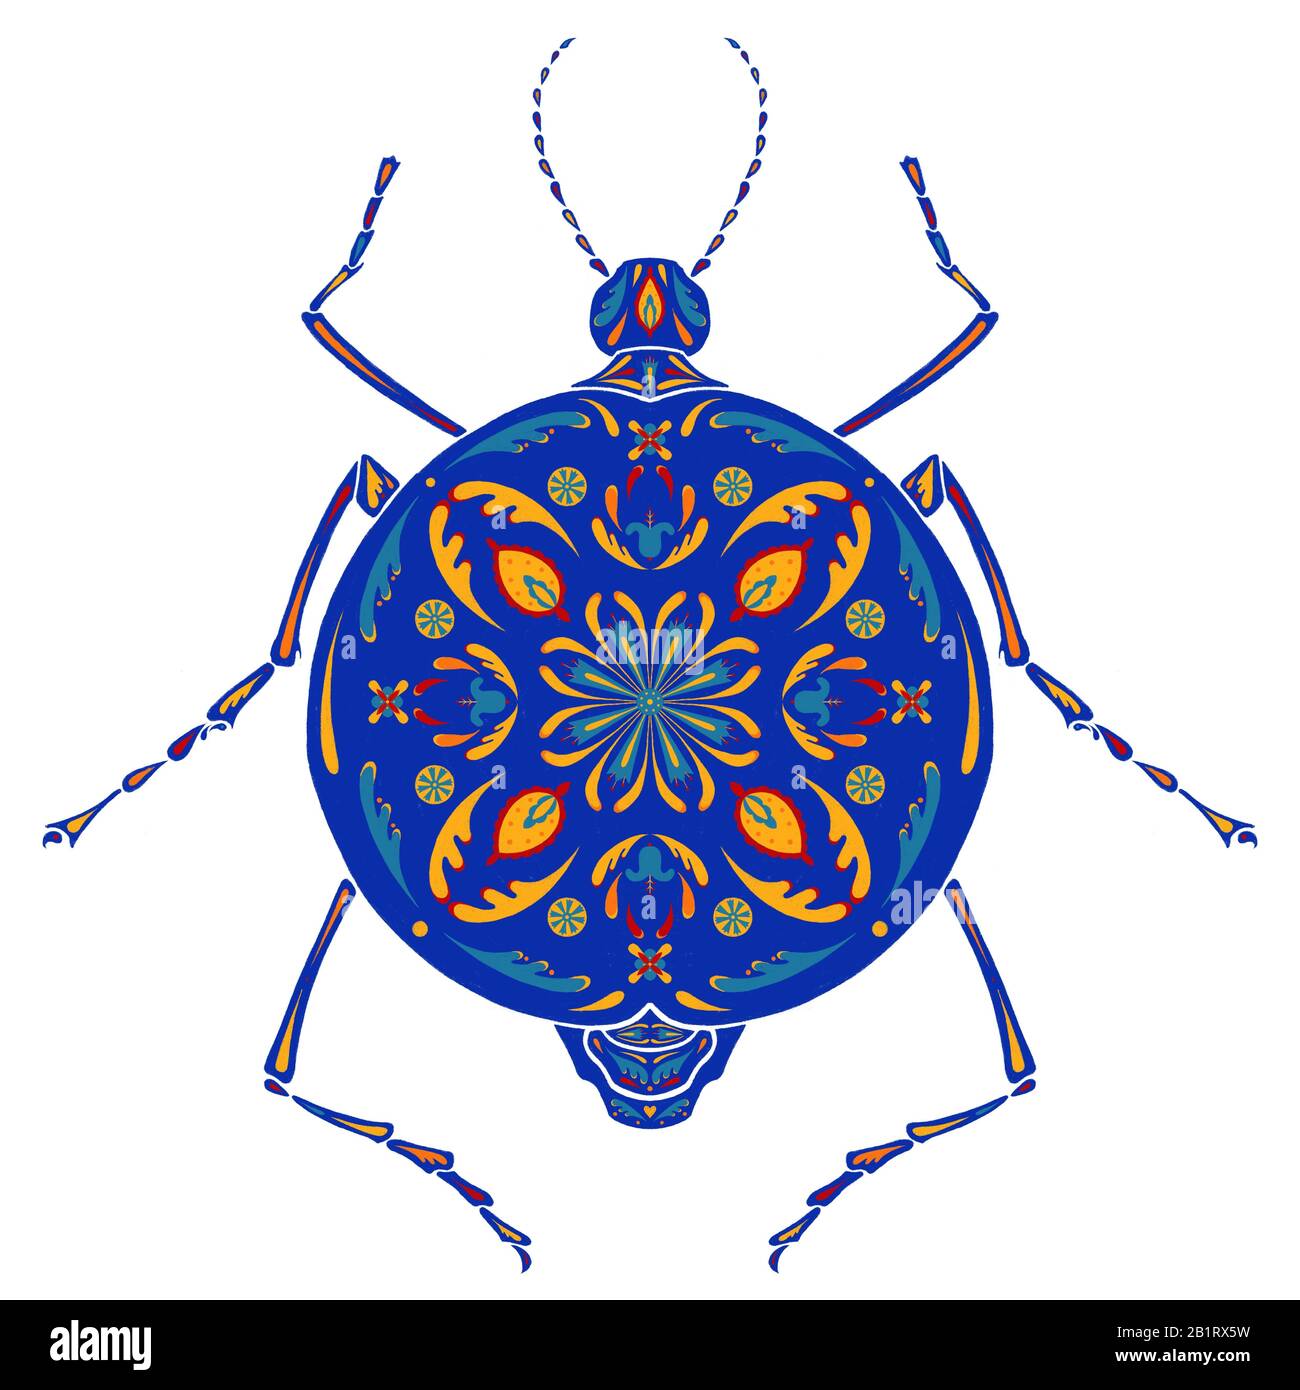 Die Grafik, Illustration mit rundem ultrameinen, blauen Käfer, der von dem verzierten Blumenmuster bedeckt ist. Weißer Hintergrund. Boho, Folklore, Hippie-Poster. Stockfoto